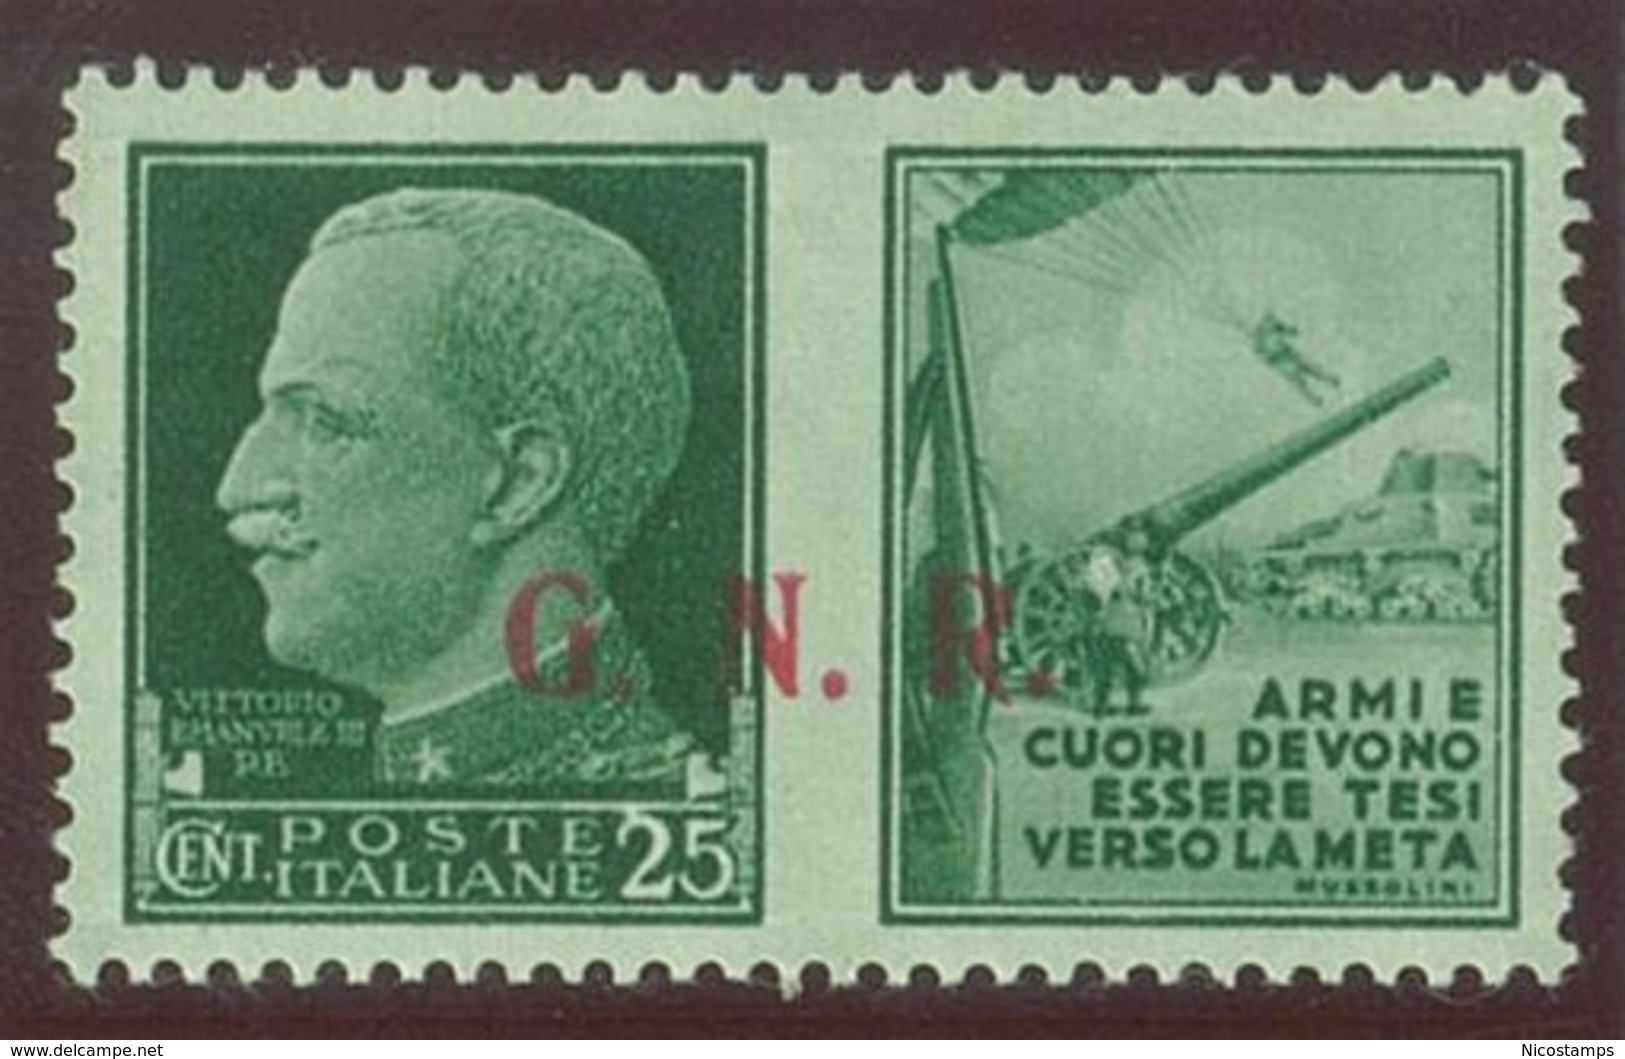 ITALIA REPUBBLICA SOCIALE ITALIANA (R.S.I.) SASS. P.G. 14/IIIed  NUOVO - Propaganda Di Guerra